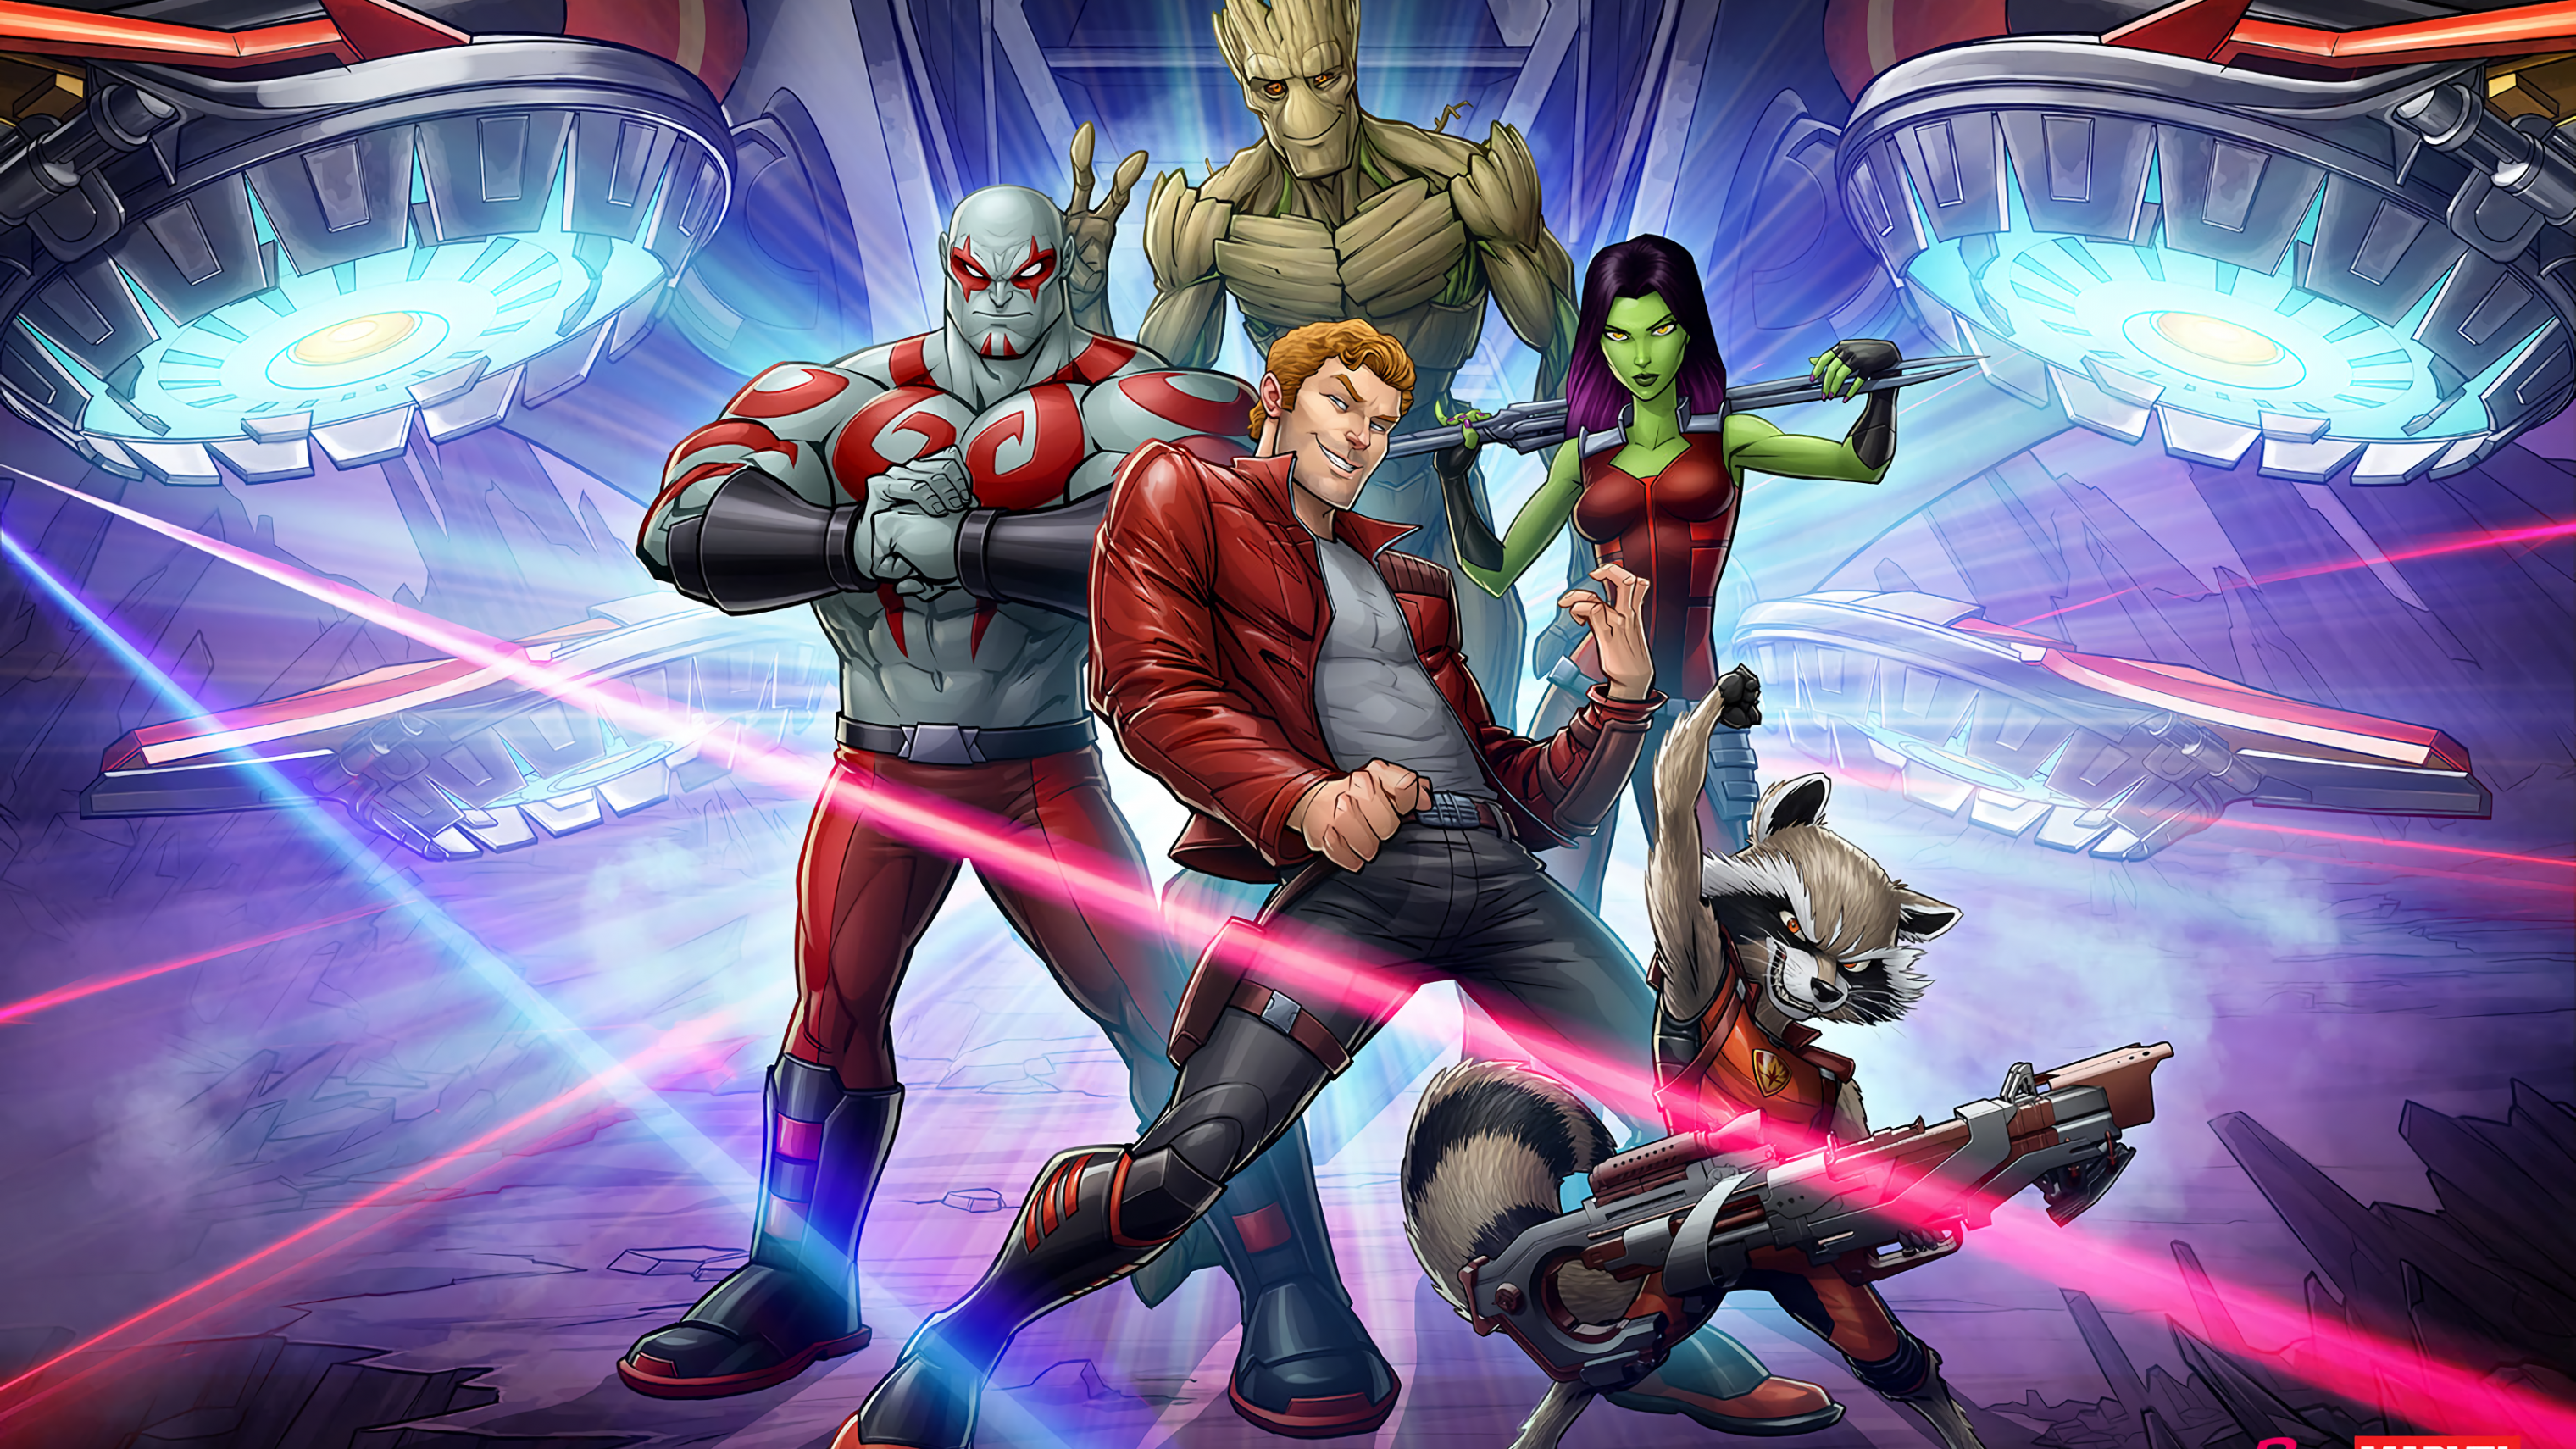 Guardians Of The Galaxy, Rocket Raccoon, Gamora, Groot, - Cómics Guardians Of Galaxy - HD Wallpaper 